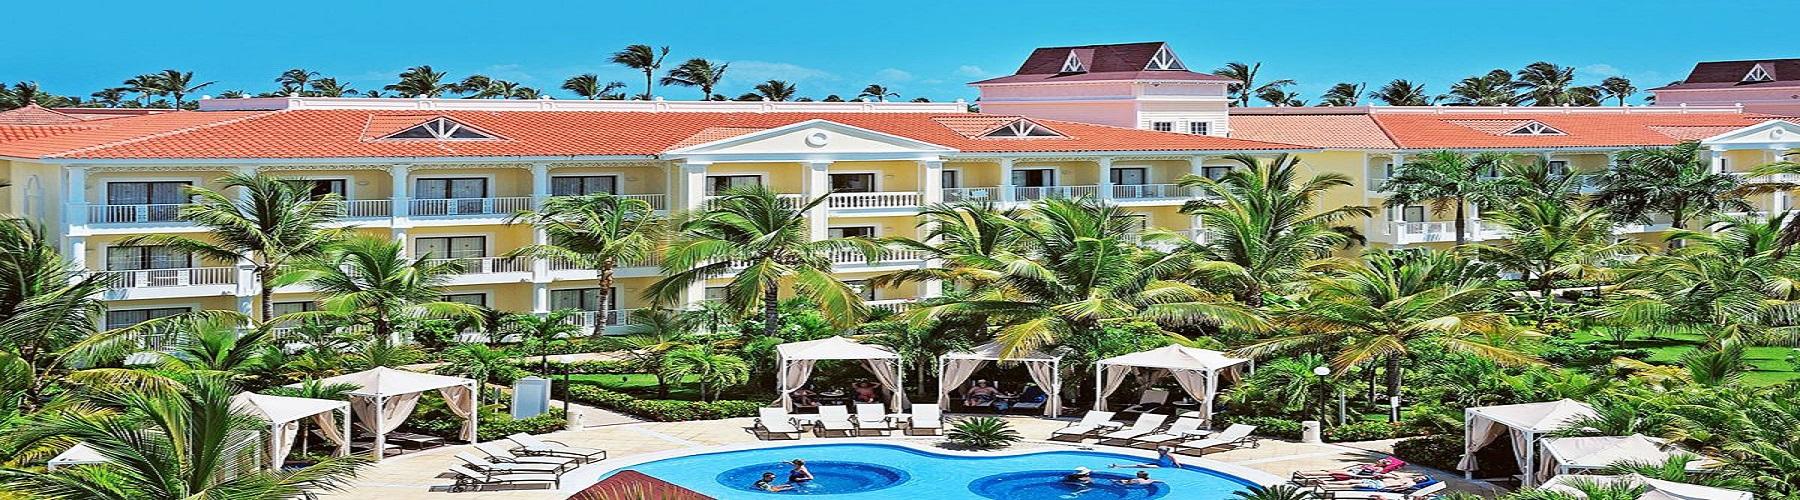 Отдых в отеле Luxury Bahia Principe Esmeralda 5*